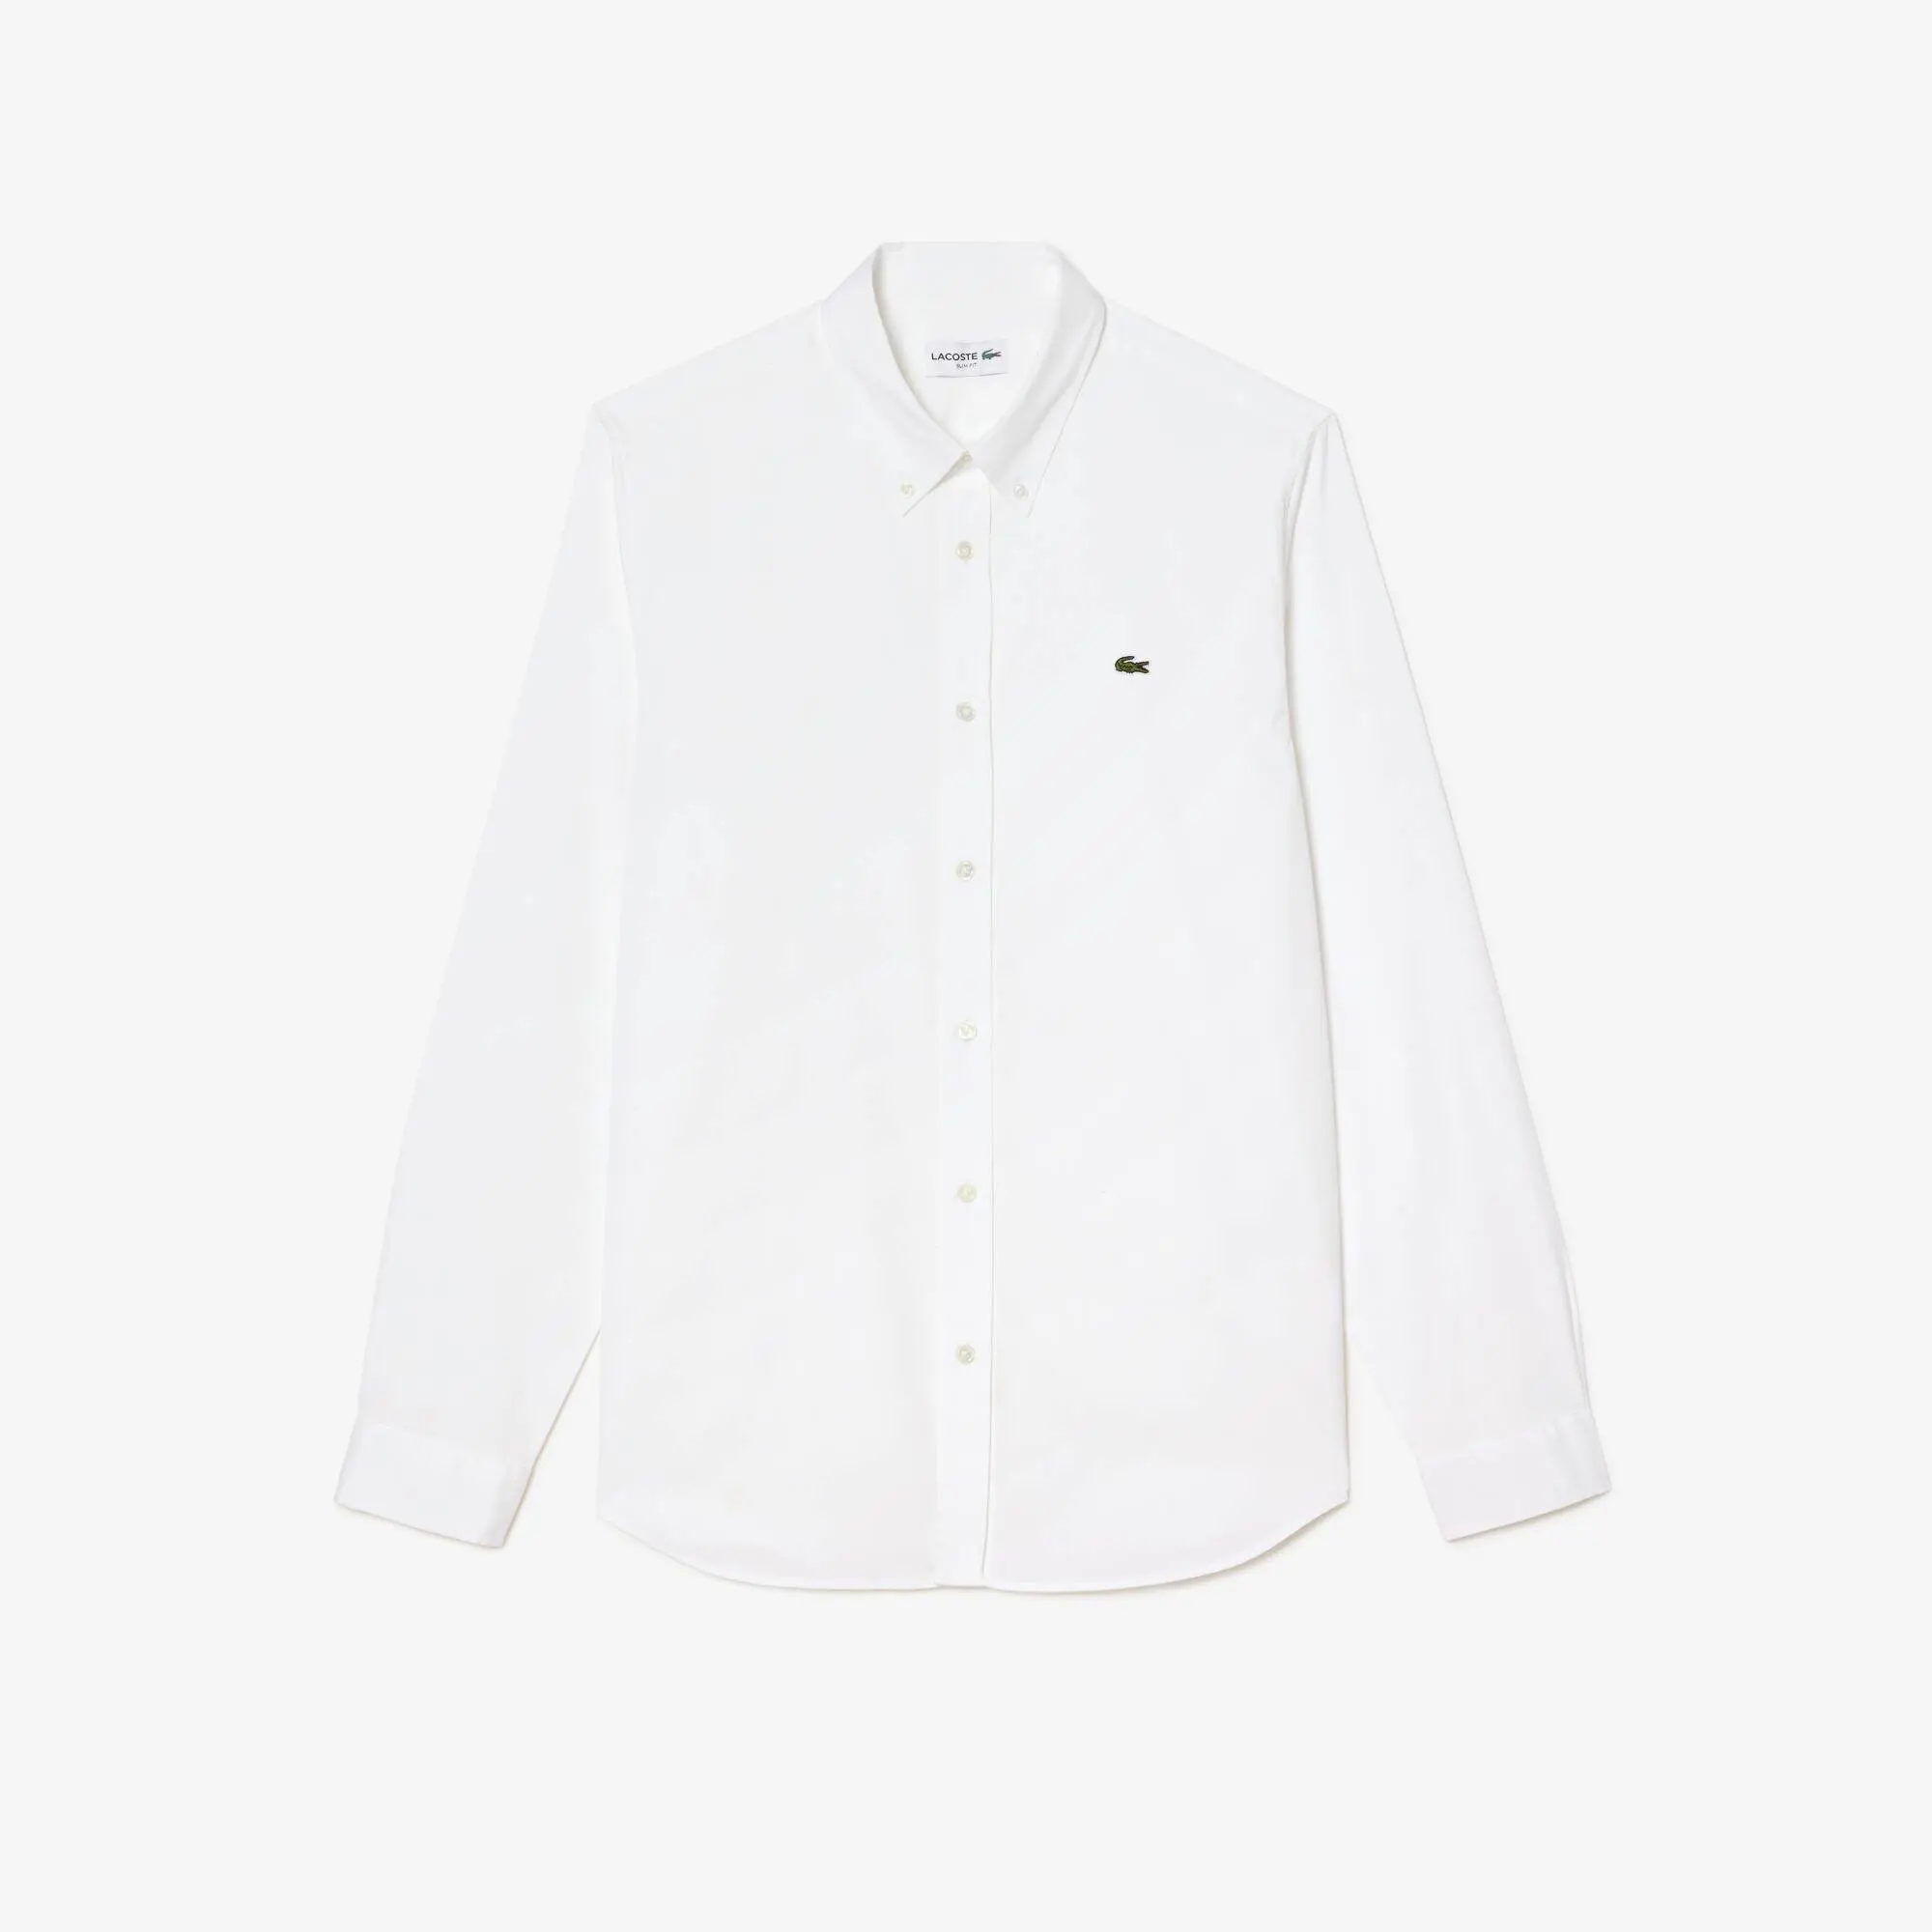 Lacoste Men’s Slim Fit Premium Cotton Shirt. 2